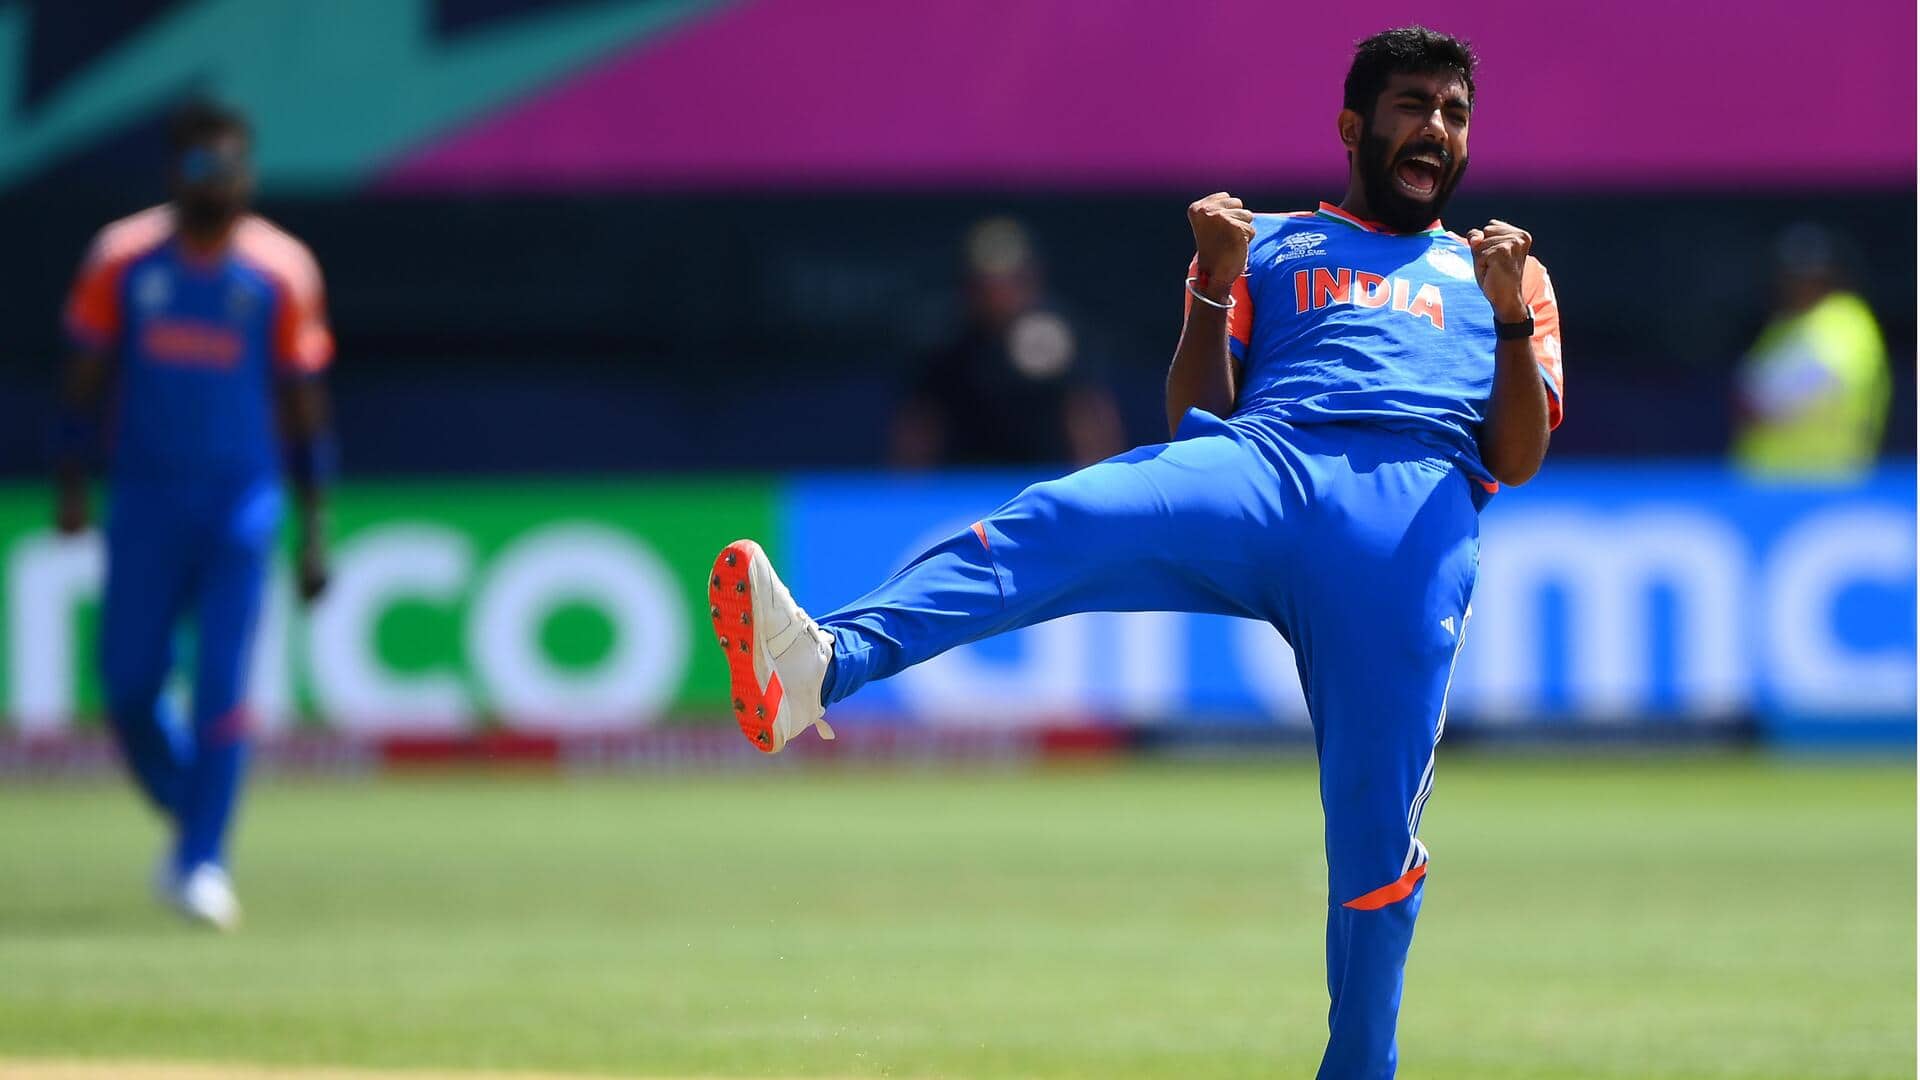 टी-20 विश्व कप: लगातार मुकाबलों में 'प्लेयर ऑफ द मैच' जीतने वाले भारतीय खिलाड़ियों पर नजर